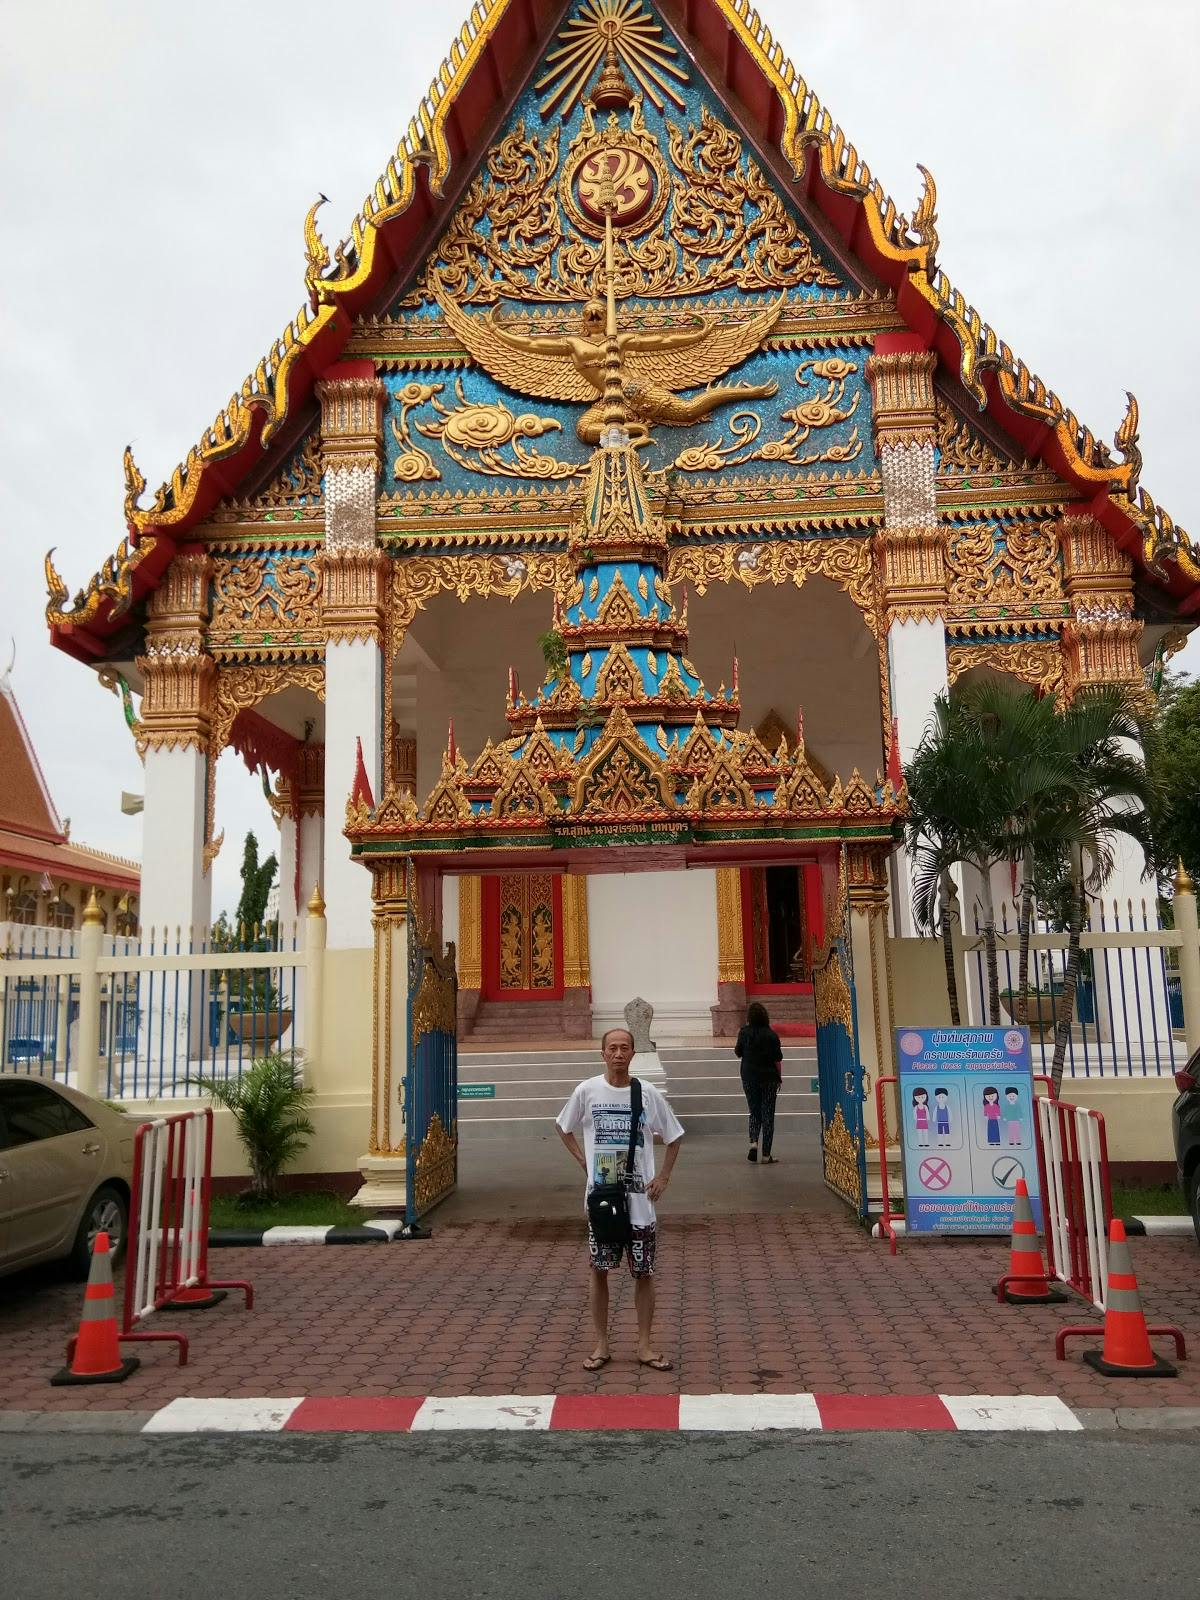 Image - Old Phuket Town